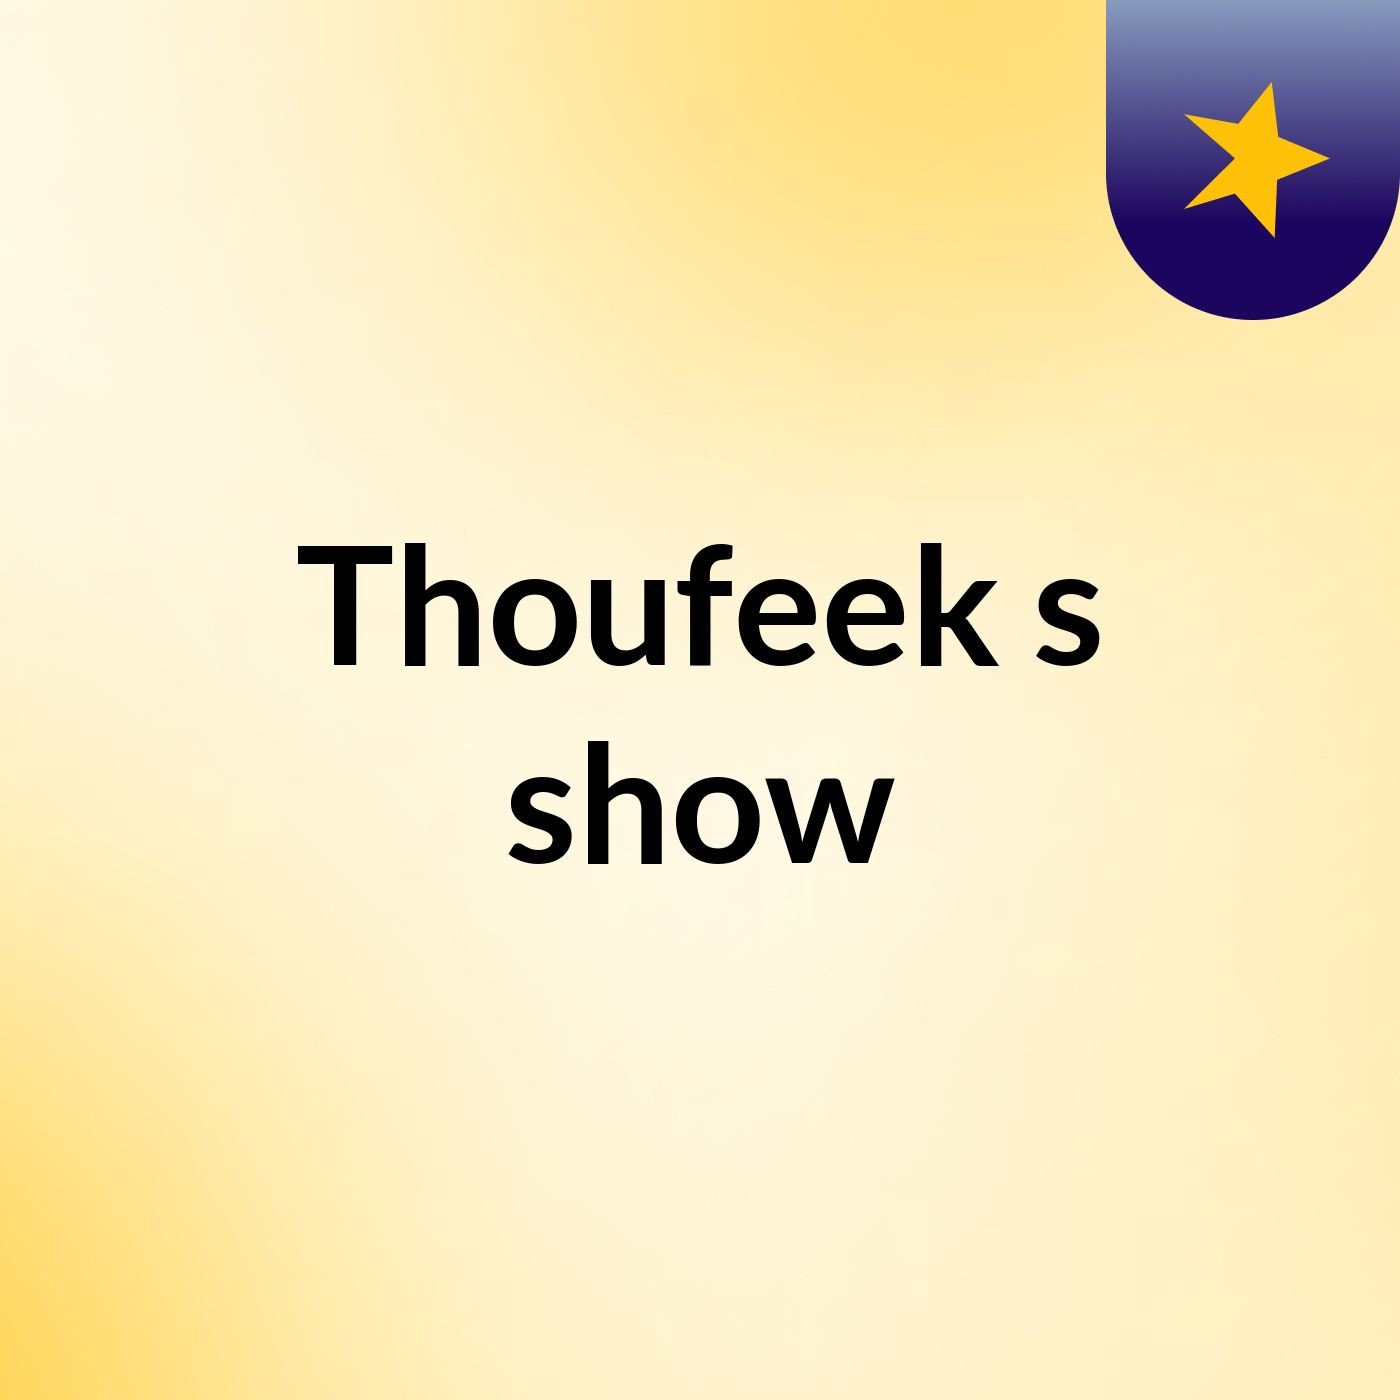 Thoufeek's show